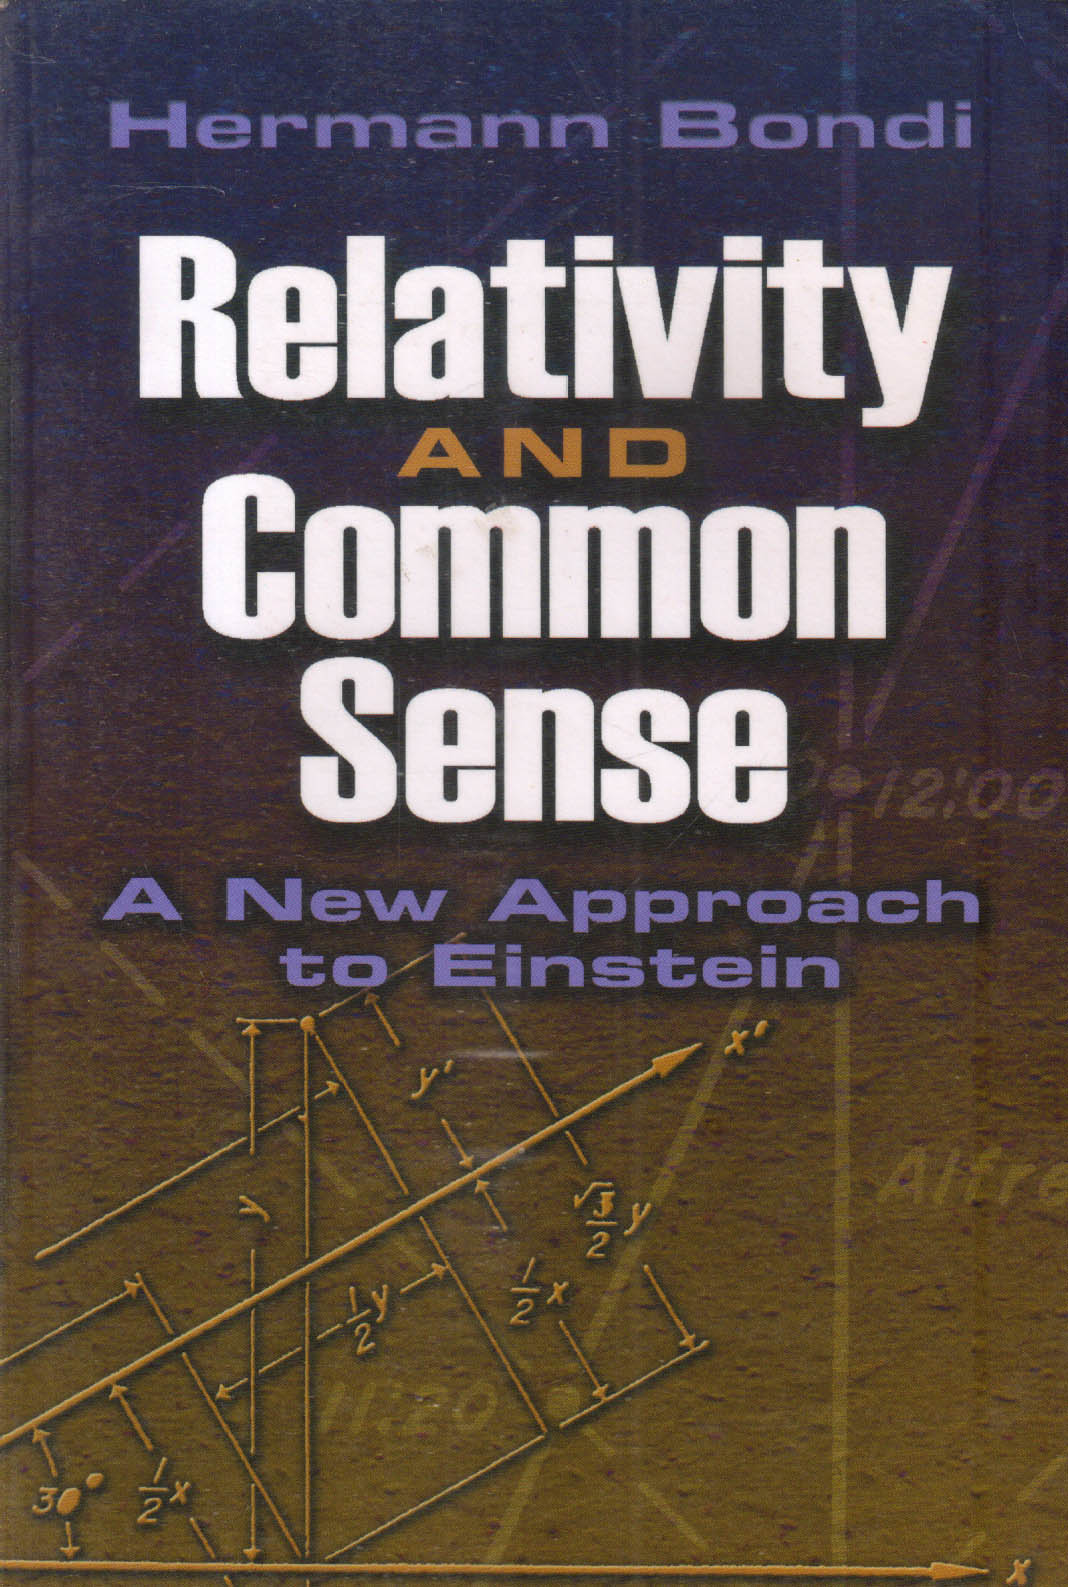 Relativity and Commonsense